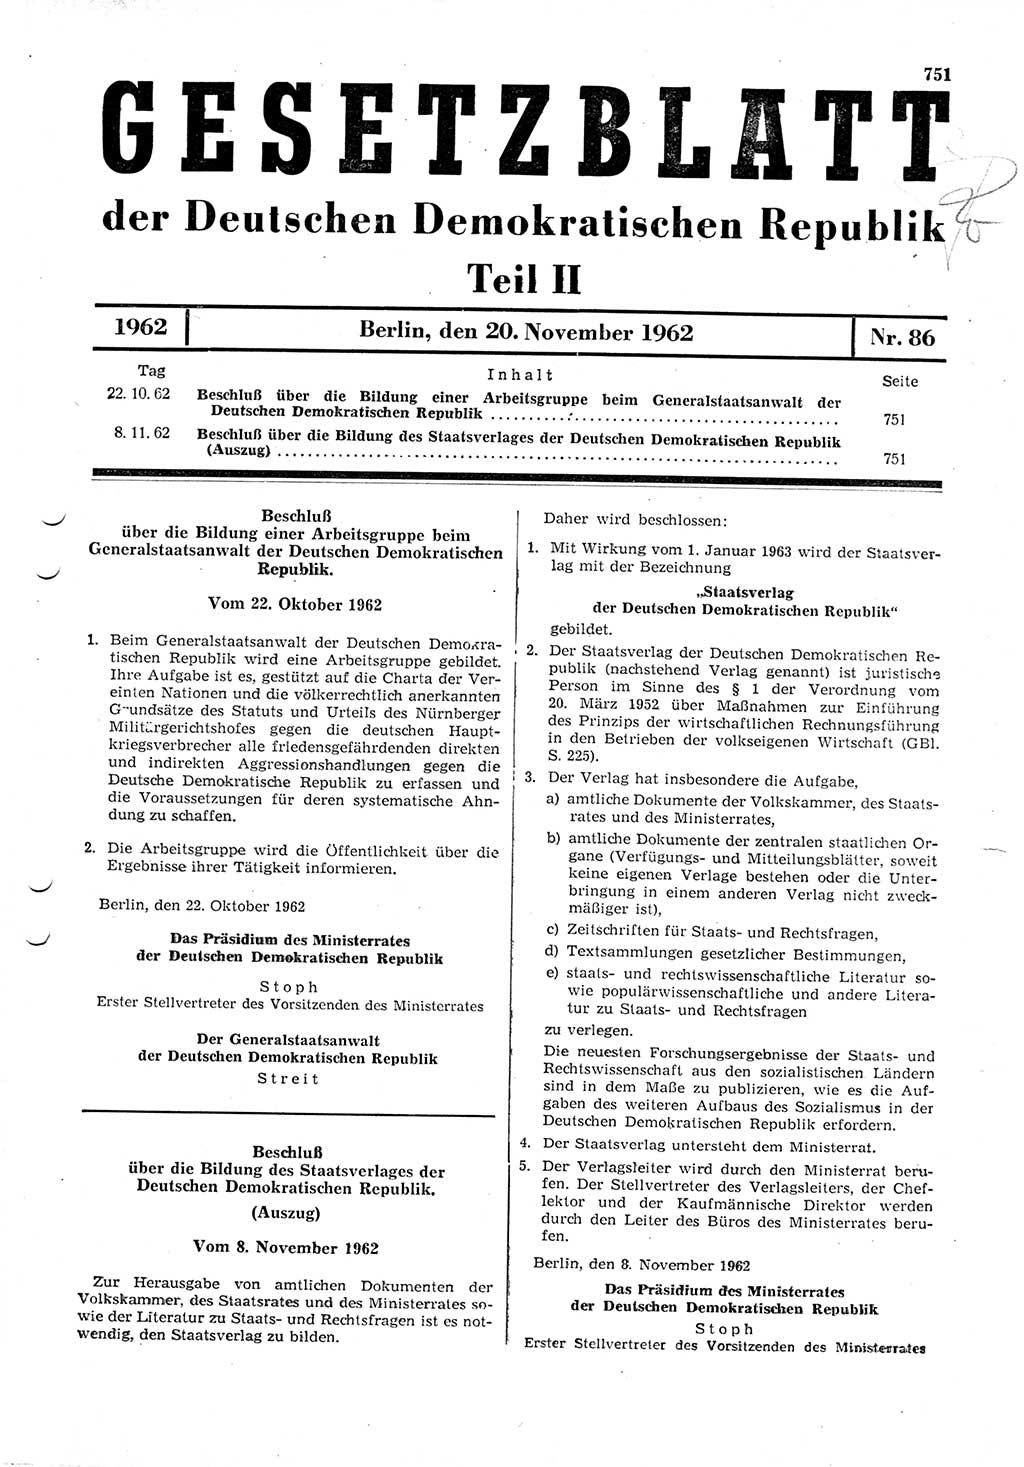 Gesetzblatt (GBl.) der Deutschen Demokratischen Republik (DDR) Teil ⅠⅠ 1962, Seite 751 (GBl. DDR ⅠⅠ 1962, S. 751)